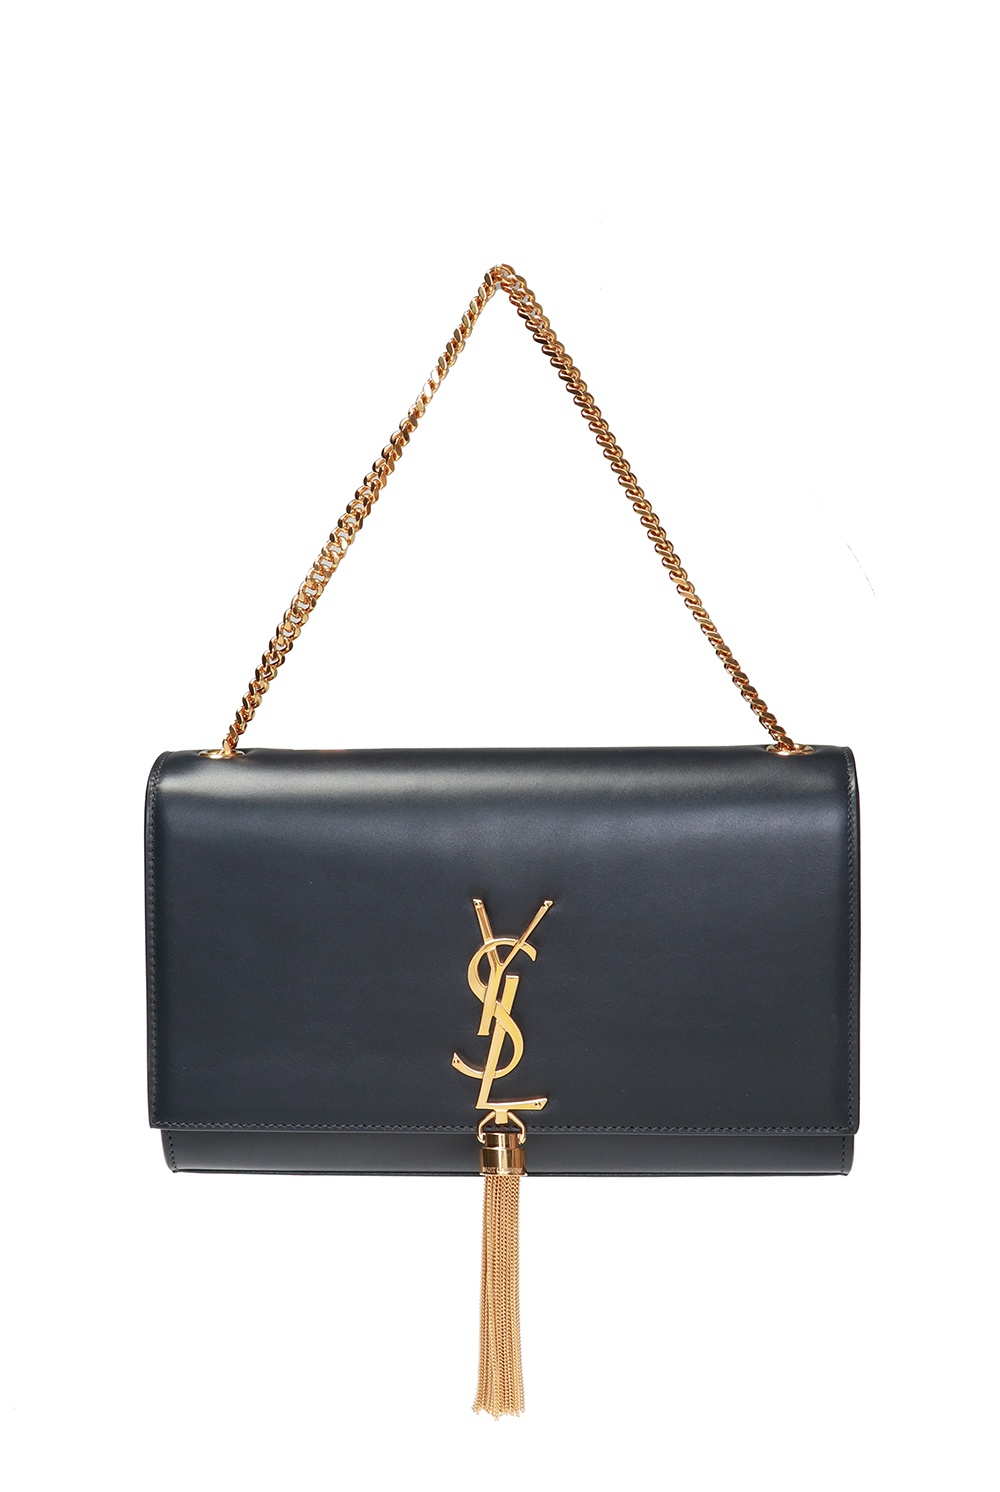 Yves Saint Laurent Kate Leather Shoulder Bag Black